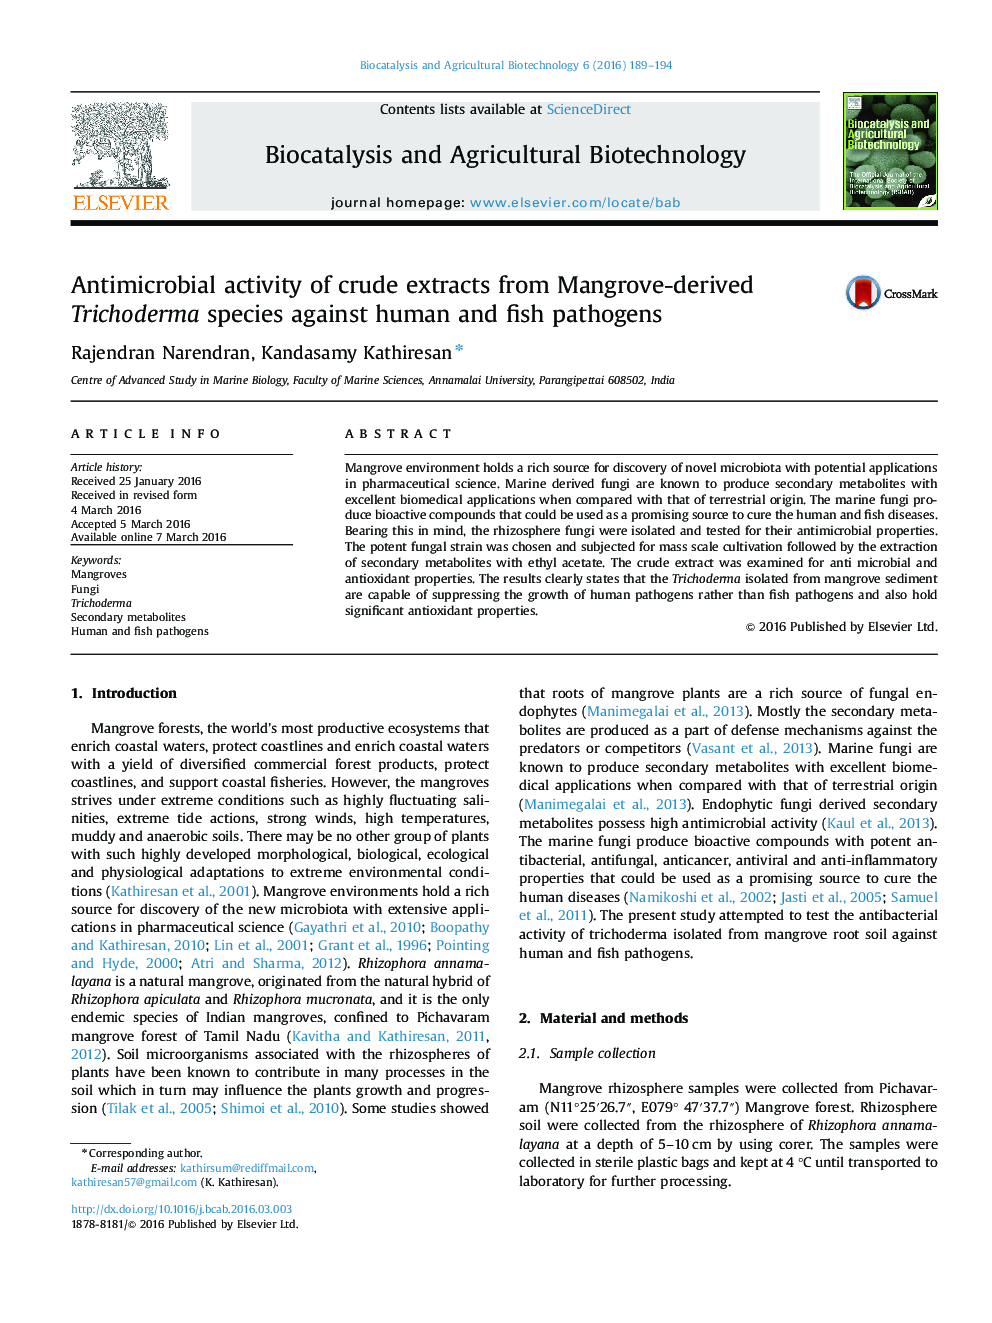 فعالیت ضد میکروبی عصاره های خام از گونه های Trichoderma مشتق شده از Mangrove علیه پاتوژن های انسان و ماهی